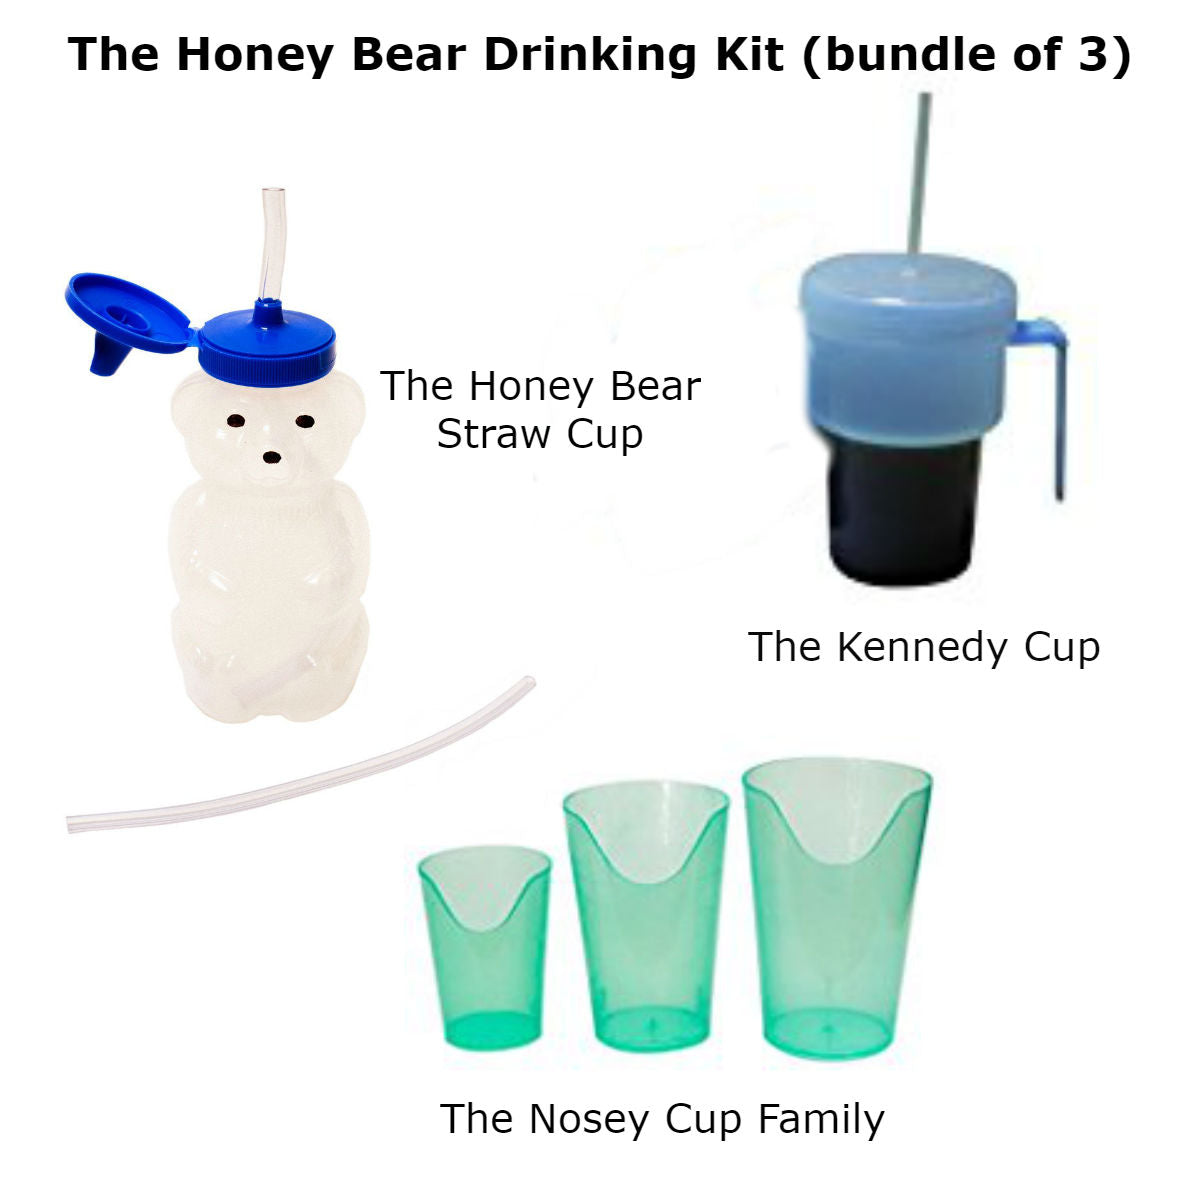 https://specialneedsessentials.com/cdn/shop/products/The_Honey_Bear_Drinking_Kit.jpg?v=1579934893